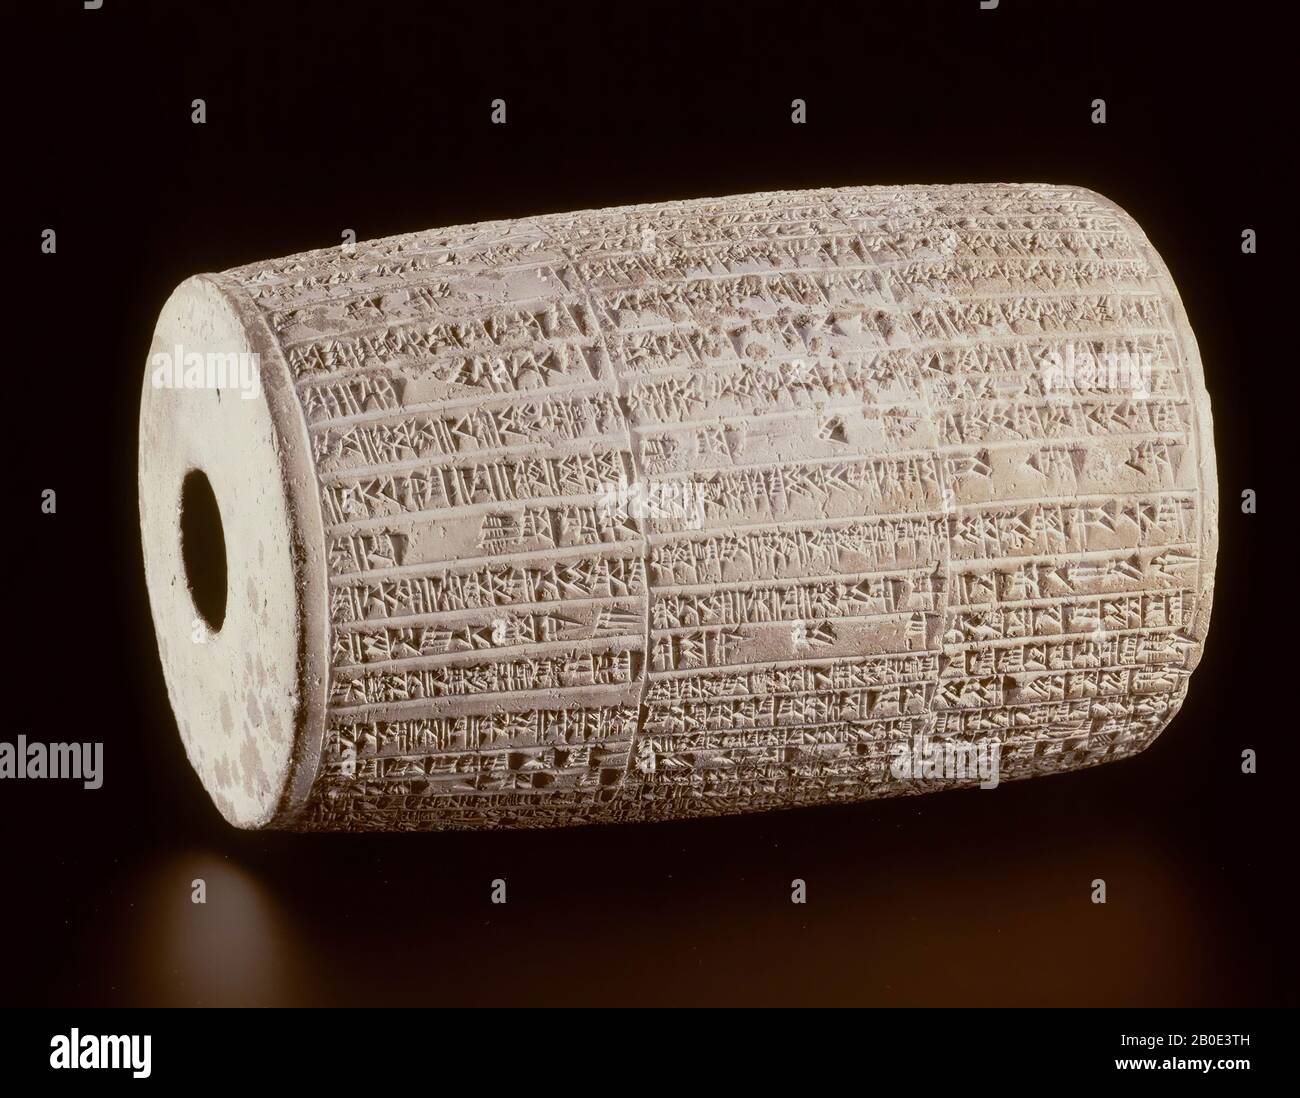 Der Hohlzylinder trägt eine religiöse Aufschrift in Keilschrift des großbabylonischen Königs Nebukadnezar II Triumphierend kündigt er den Bau des Tempels an, der Lugal-Maradda, dem obersten gott der antiken Stadt Marad in Babylonien, gewidmet ist. Dieser Zylinder wurde im Fundament des Tempels von Marad beigesetzt. Warum diese Aufschrift für die Form eines Zylinders gewählt wurde, Ist unklar: Zylinder, Aufschrift, Keramik, D 22 cm, Neo Babylonian Periode 605-562 v. Chr., Irak Stockfoto